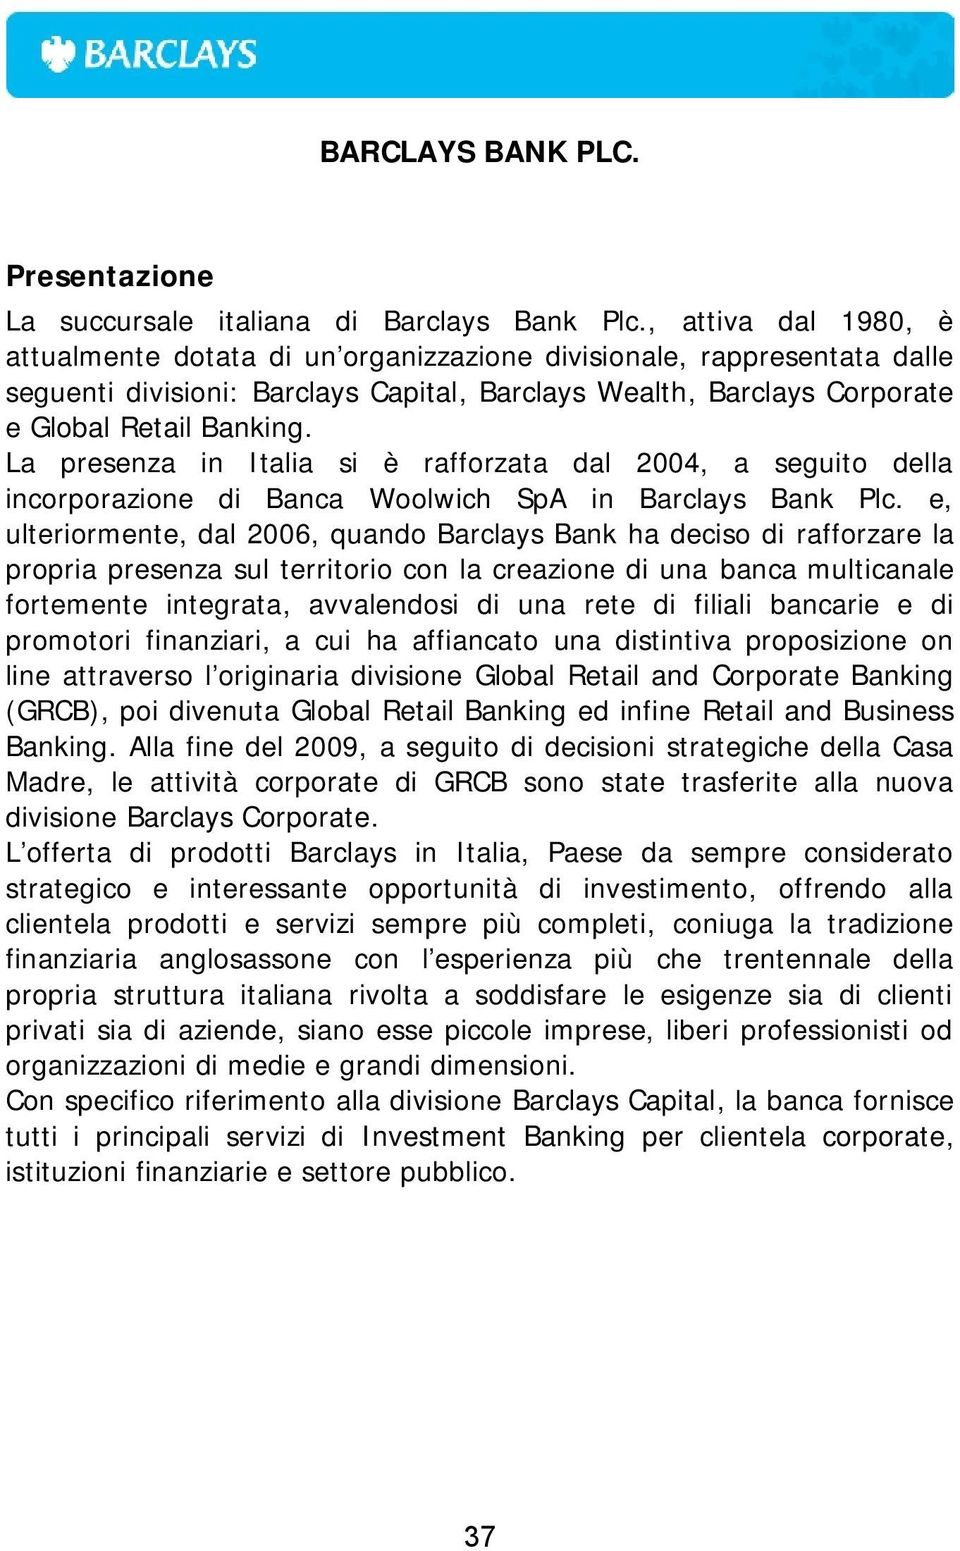 La presenza in Italia si è rafforzata dal 2004, a seguito della incorporazione di Banca Woolwich SpA in Barclays Bank Plc.